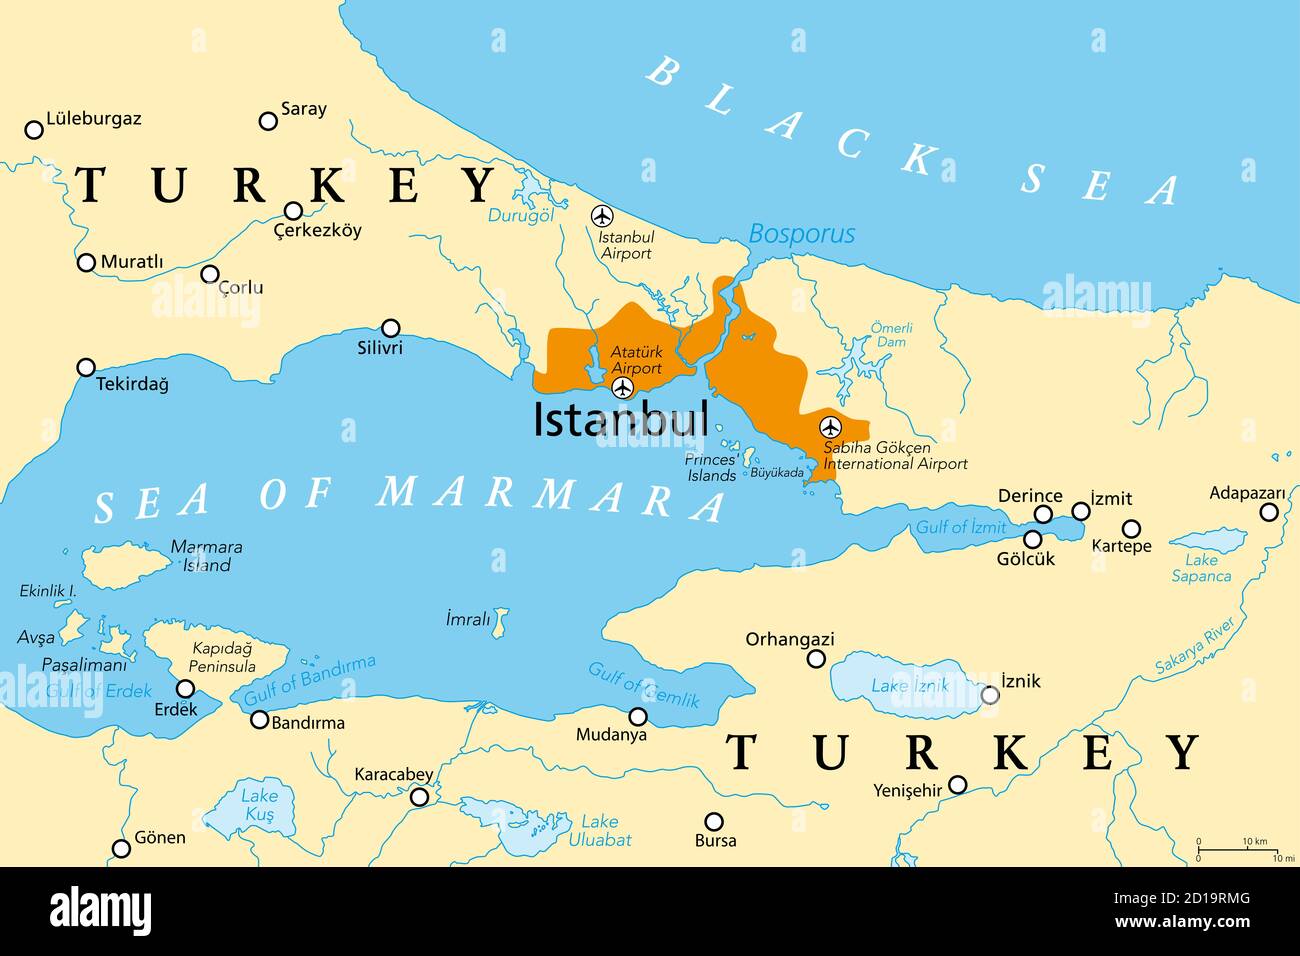 Der Bosporus oder Bosporus, politische Landkarte. Die Straße von Istanbul, eine schmale, natürliche Meerenge und internationale Wasserstraße in der Türkei. Stockfoto